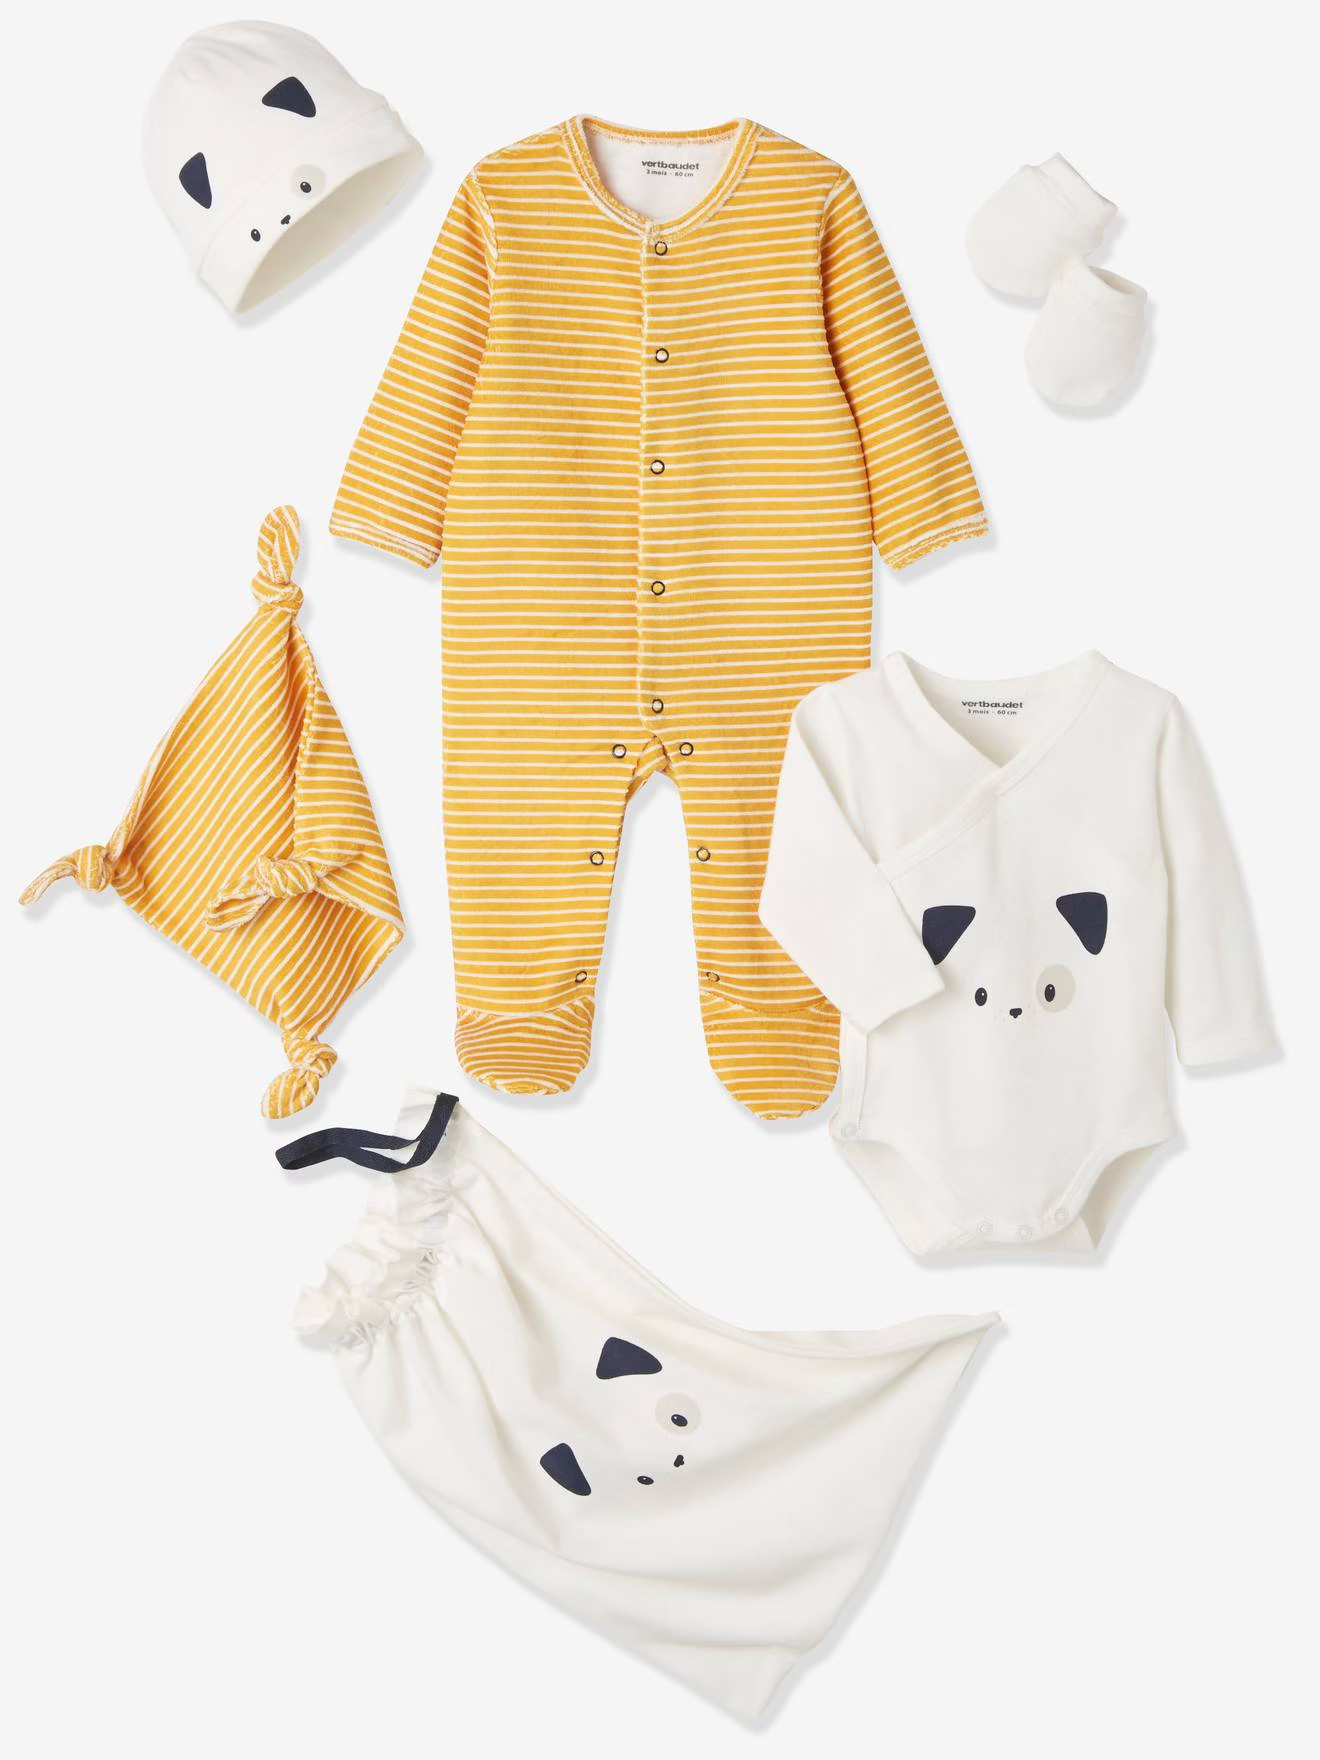 Ensemble bébé 3 mois - Lot de vêtements pour bébé - vertbaudet